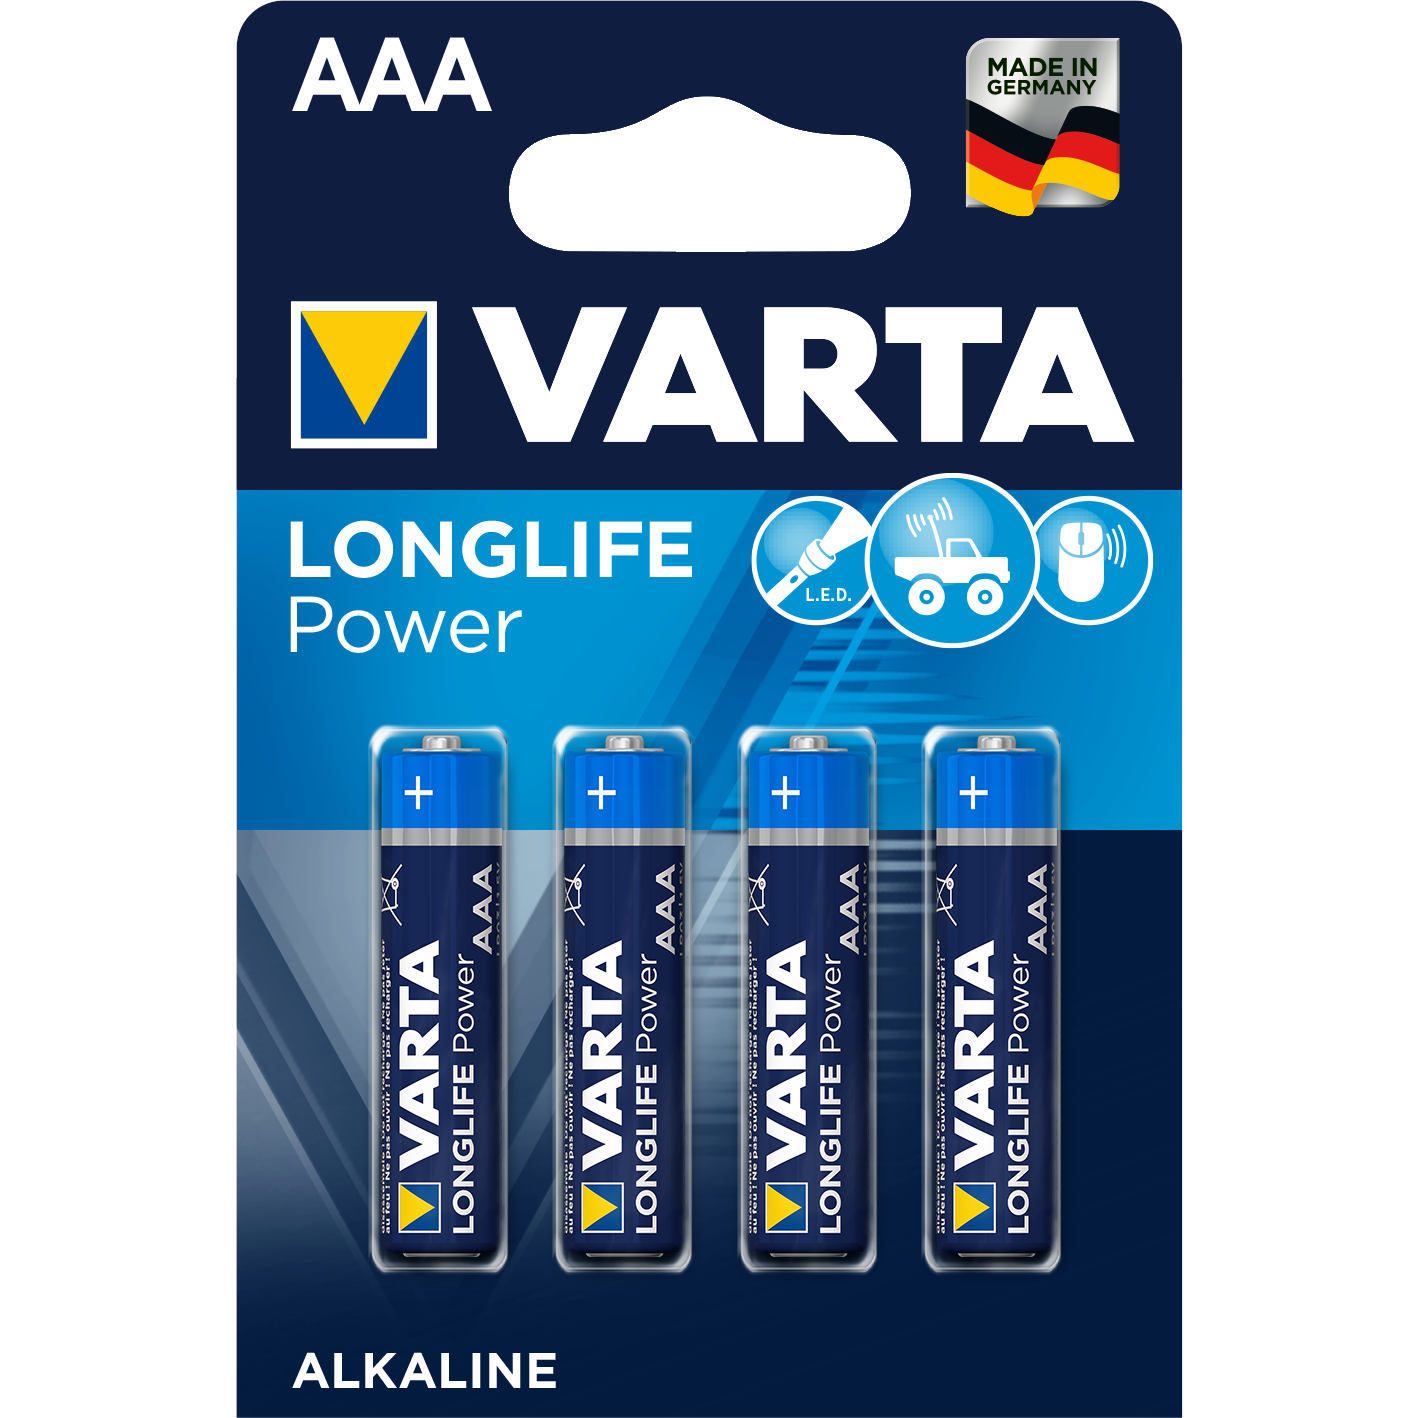 Varta Longlife Power Alk AAA 4st